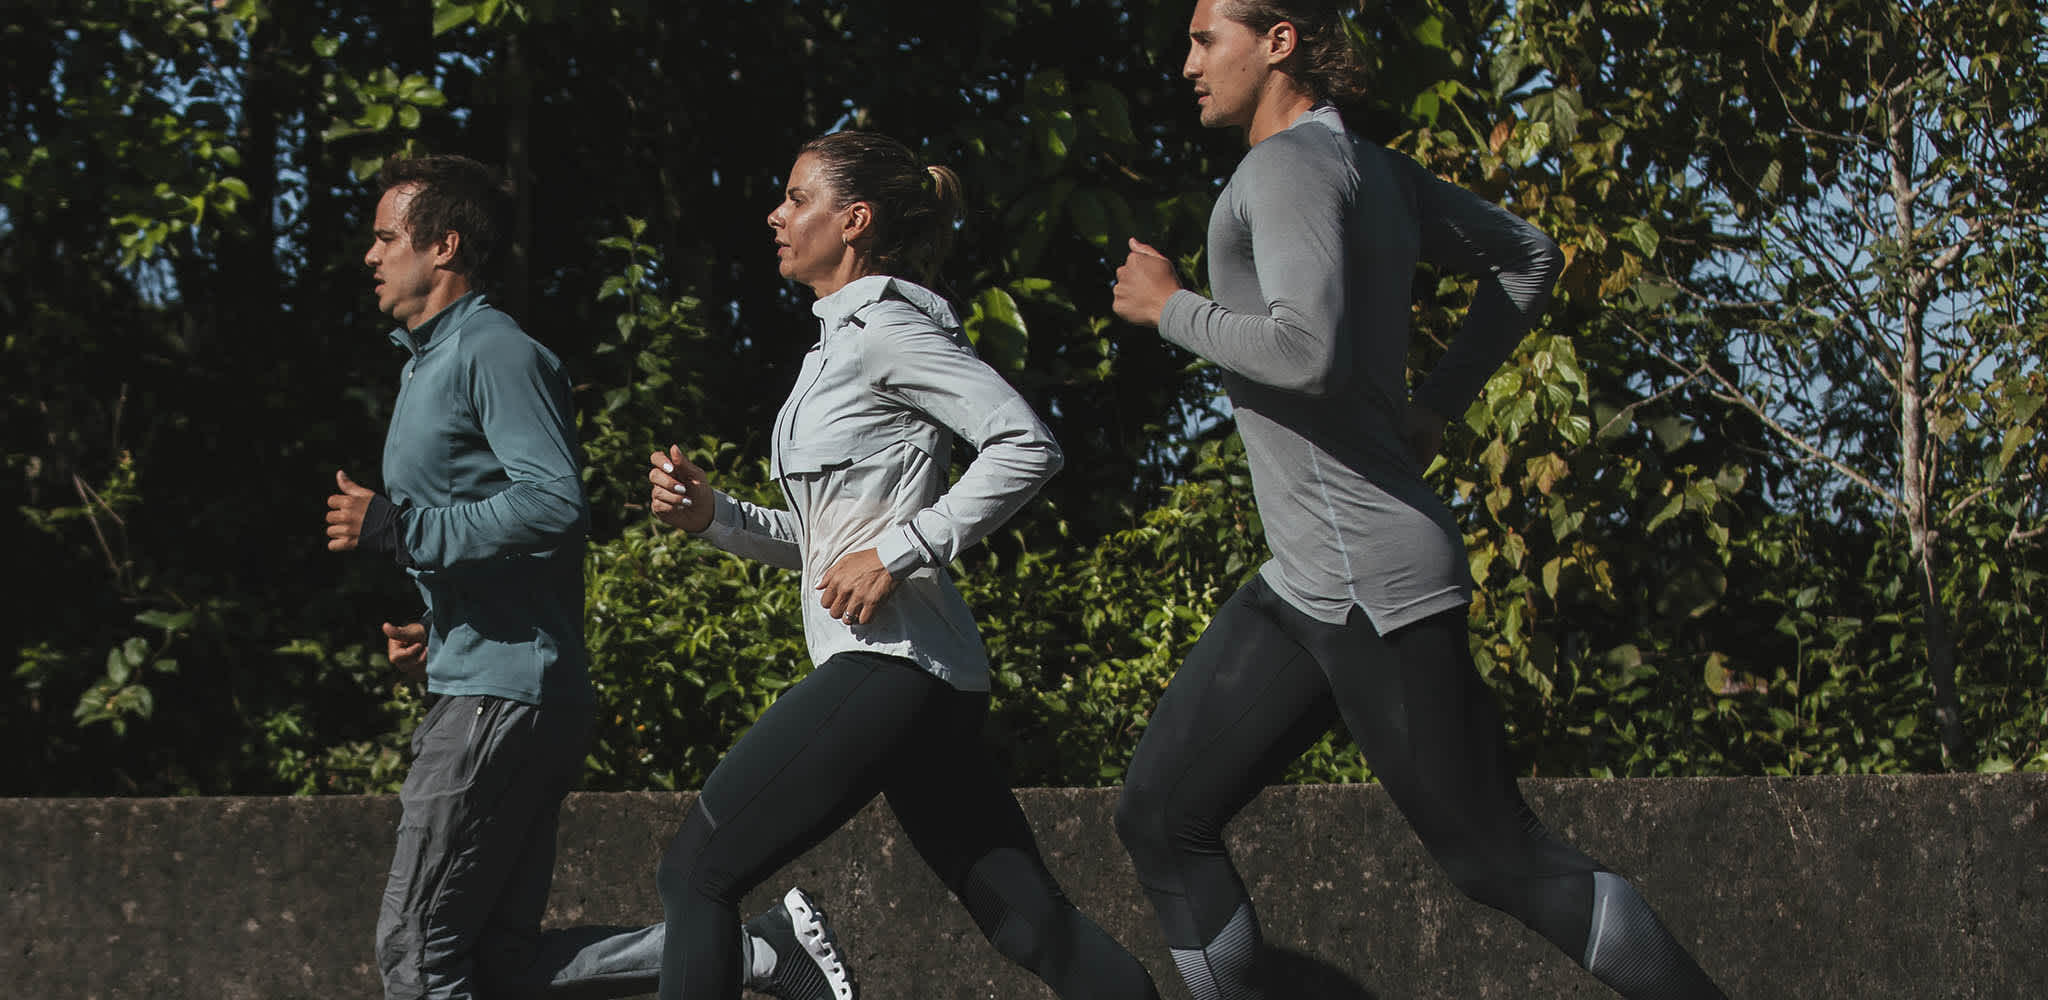 Correr faz bem! 5 benefícios da corrida para a sua saúde